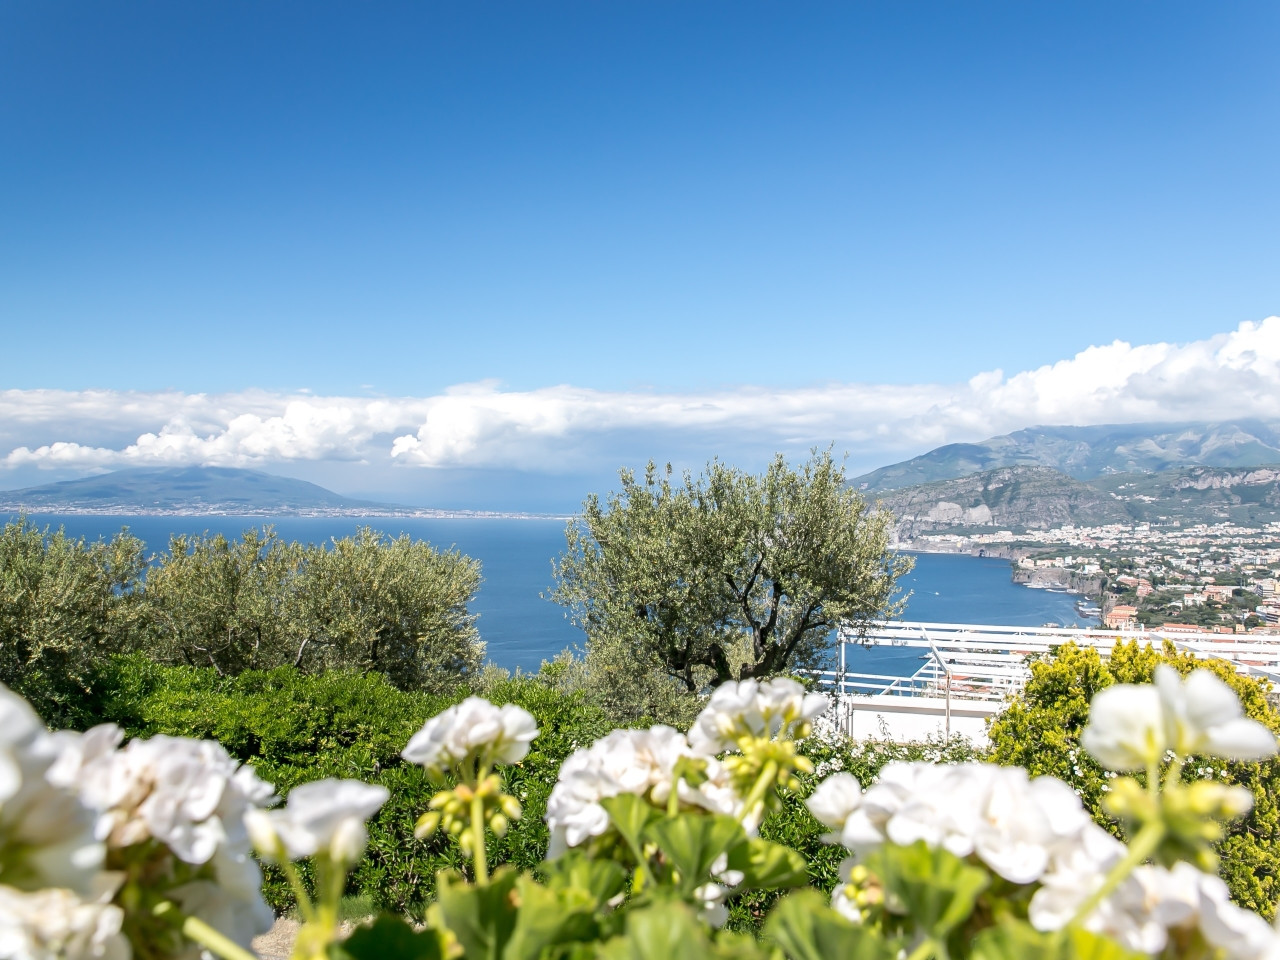 Excursions to Sorrento - Visit Sorrento - excursion in italy - excursion pompeii  - amalfi coast visit -excursion hotel in sorrento